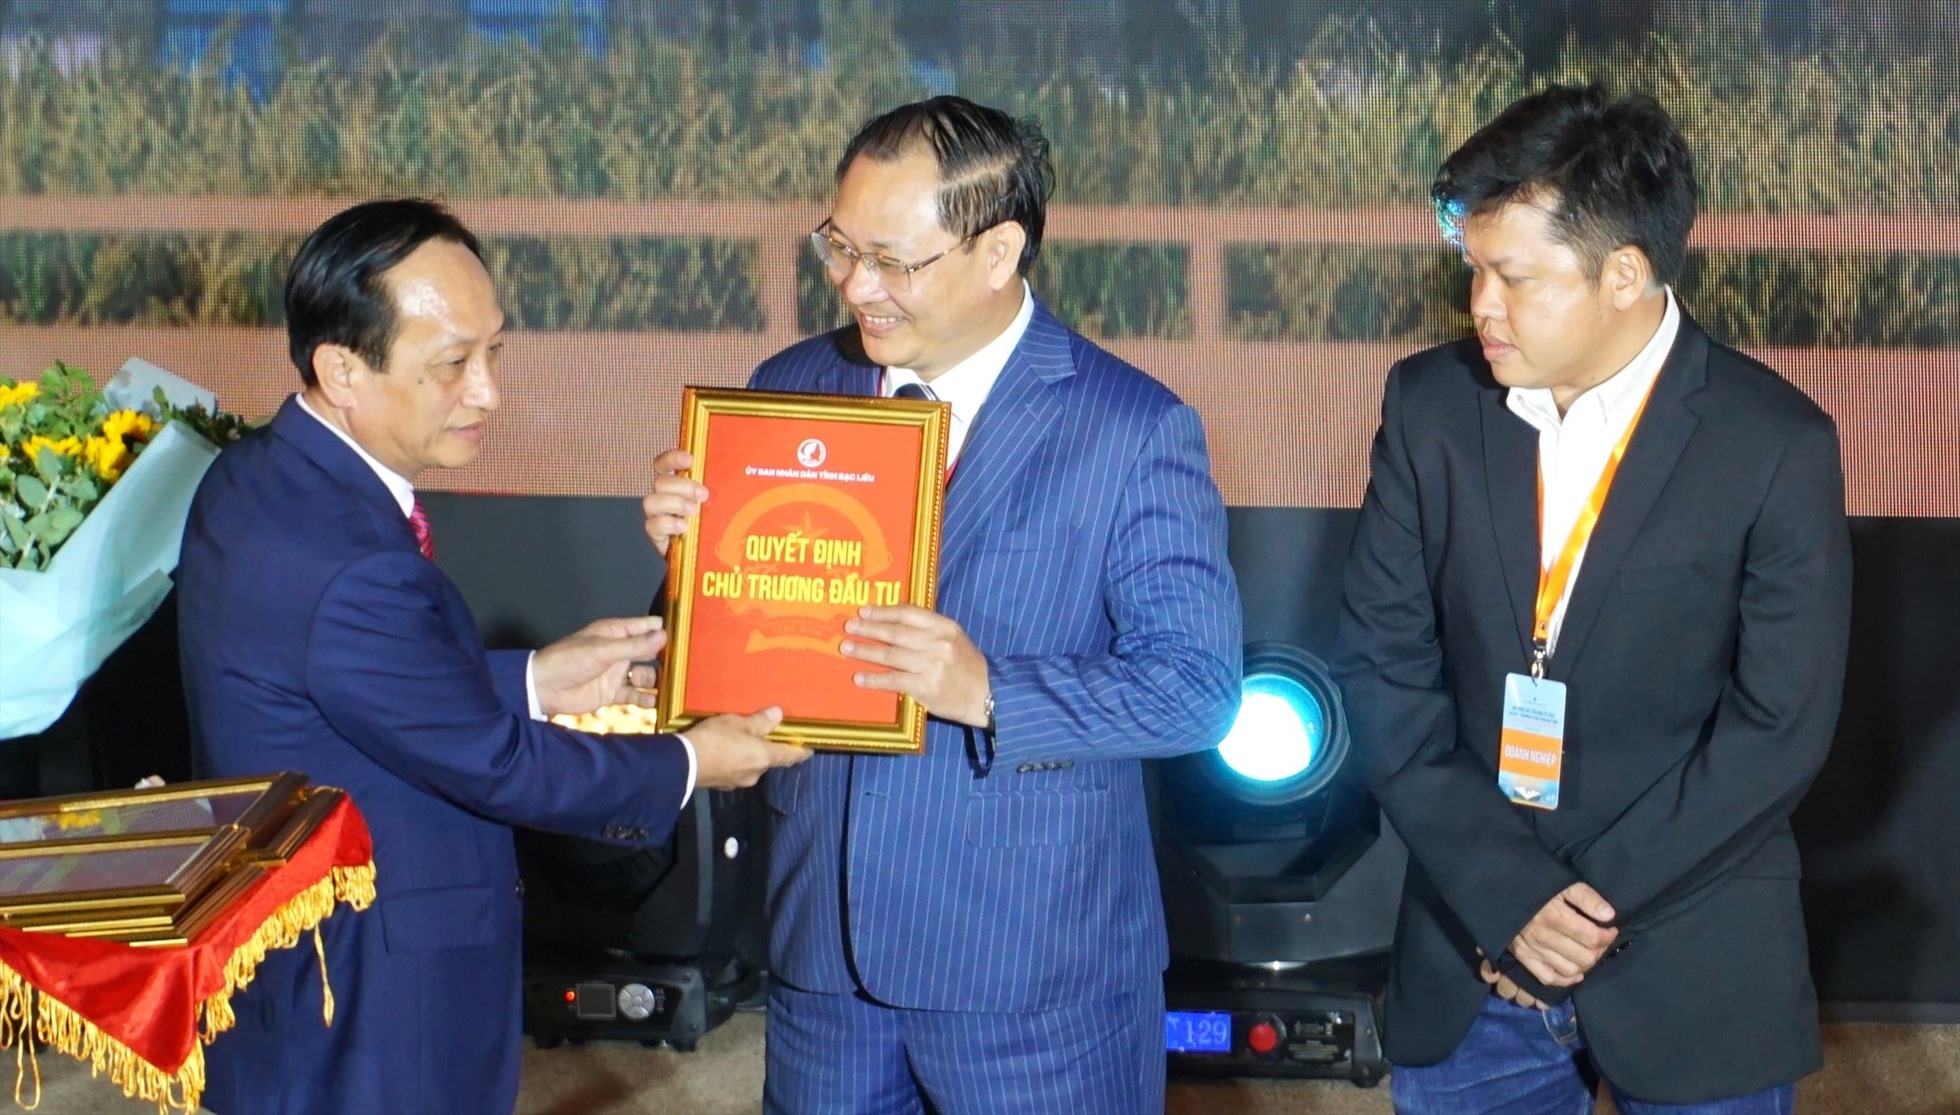 Chủ tịch UBND tỉnh Bạc Liêu Phạm Văn Thiều trao giấy chứng nhận đầu tư tại hội nghị. Ảnh: Nhật Hồ